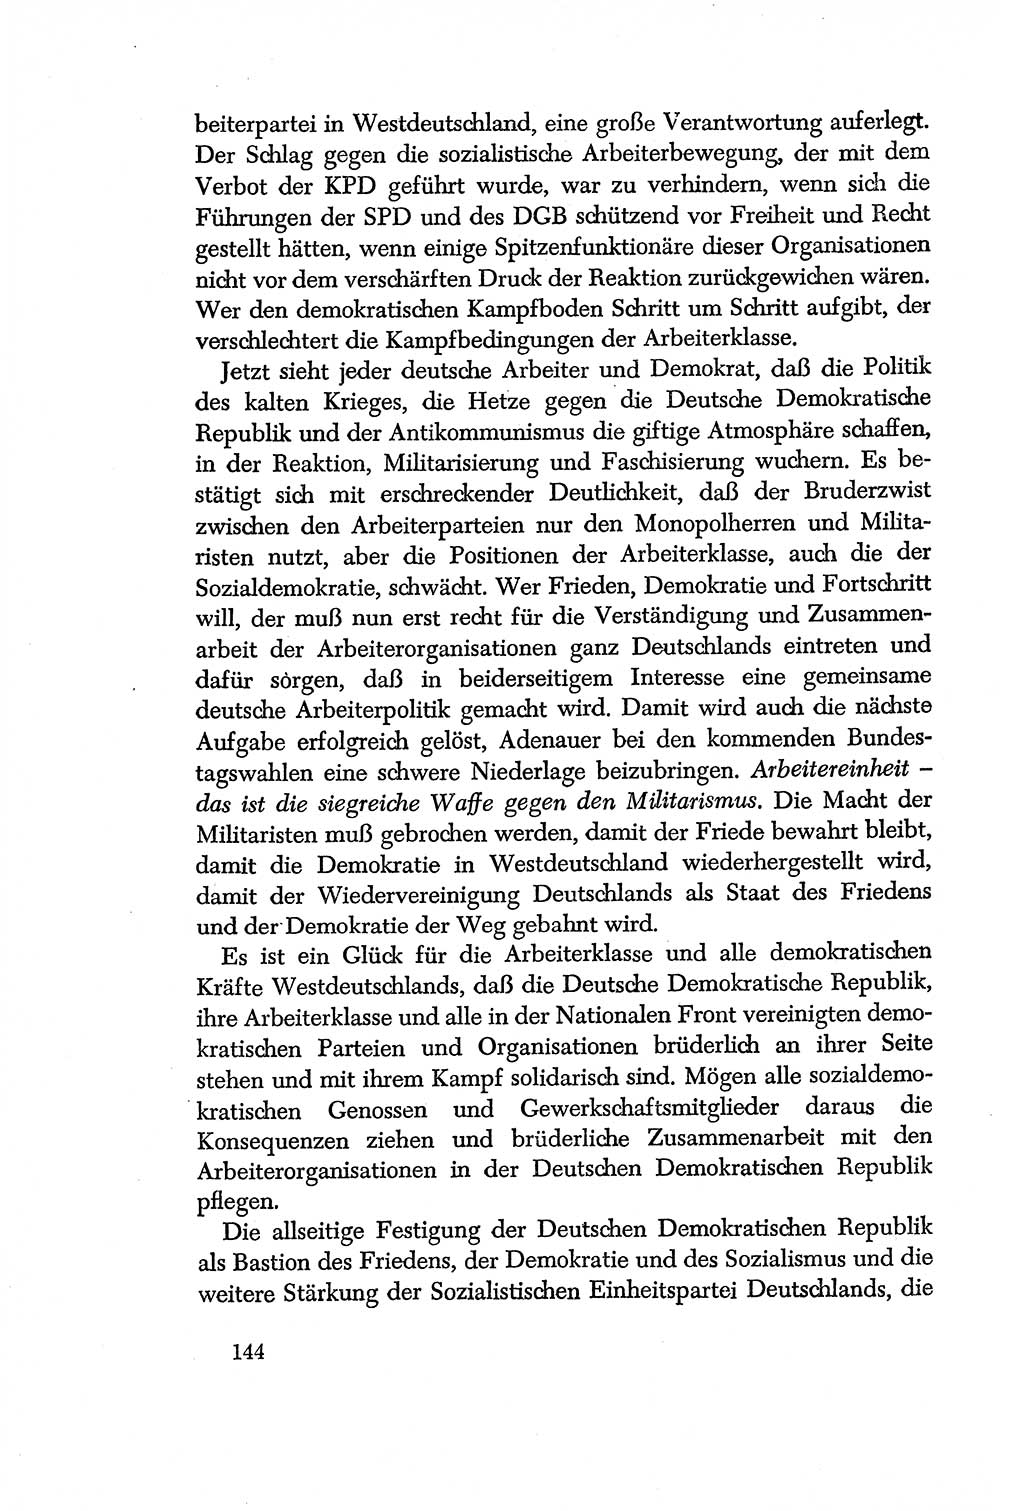 Dokumente der Sozialistischen Einheitspartei Deutschlands (SED) [Deutsche Demokratische Republik (DDR)] 1956-1957, Seite 144 (Dok. SED DDR 1956-1957, S. 144)